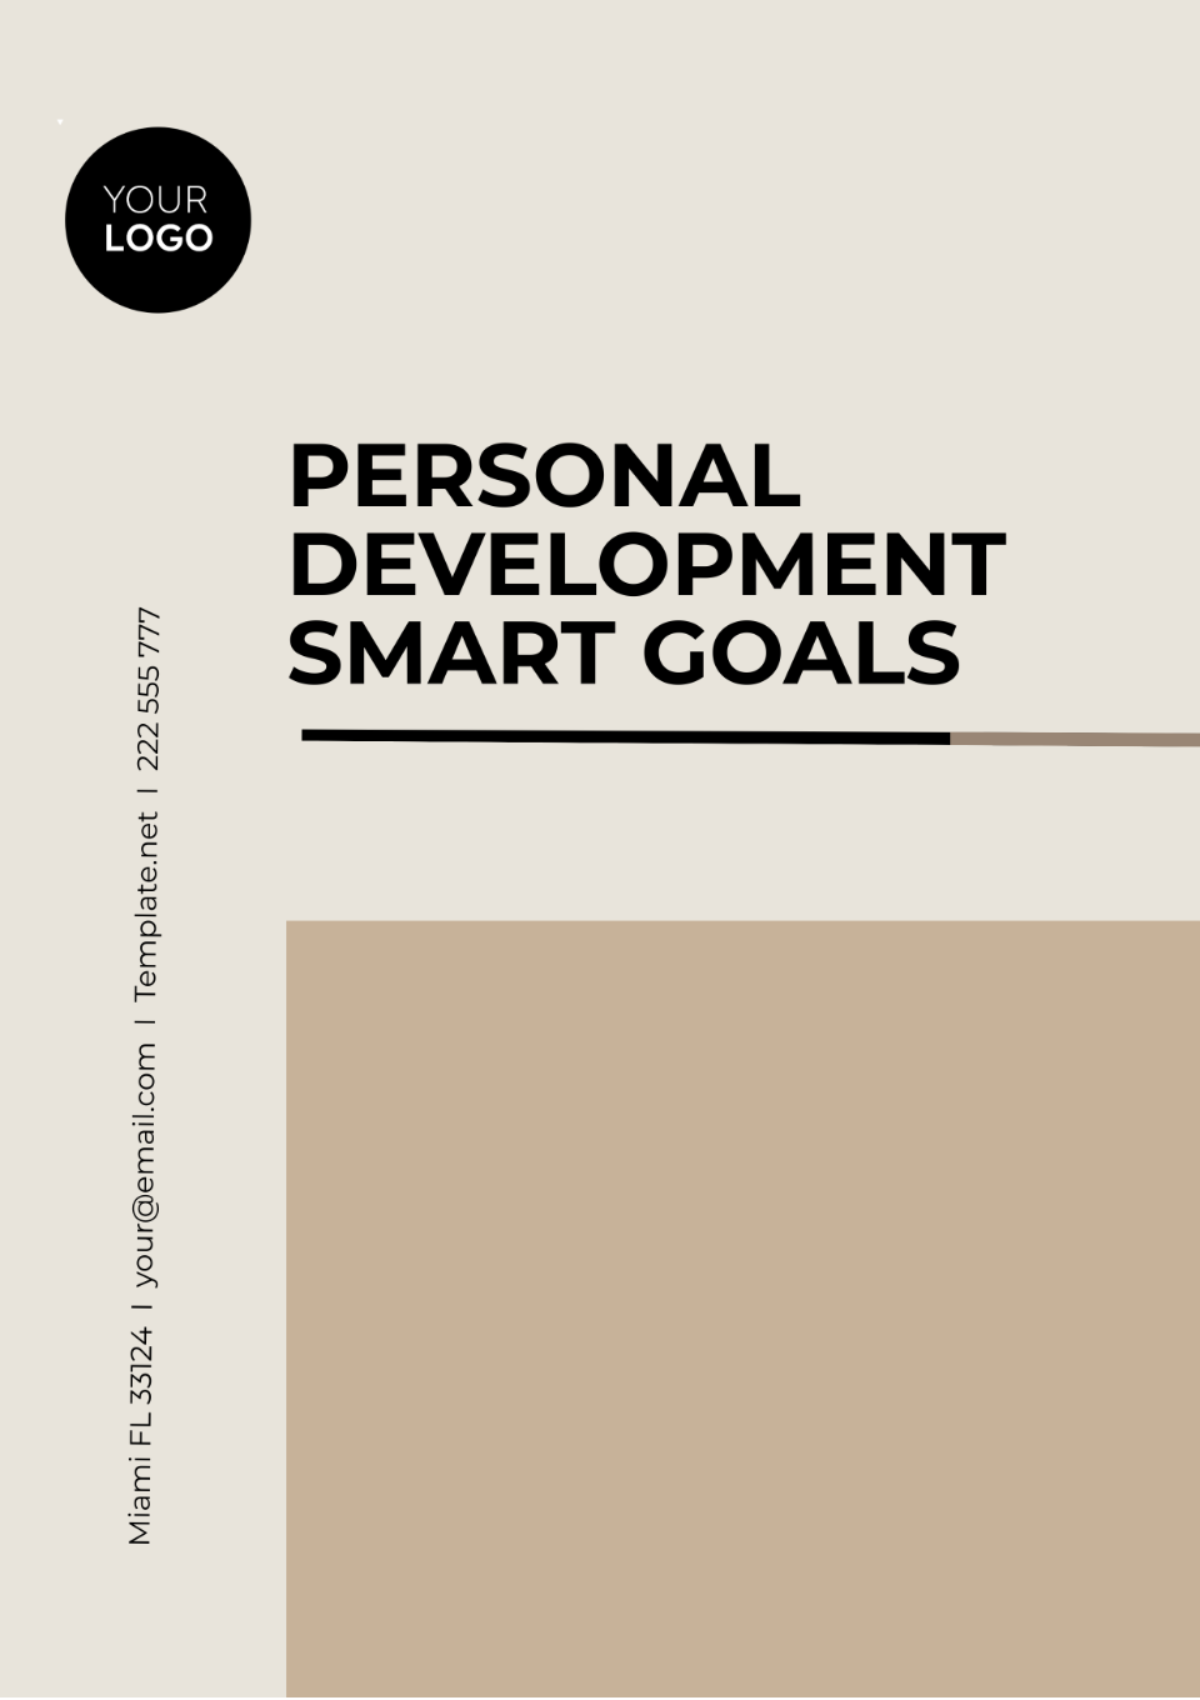 Personal Development SMART Goals Template